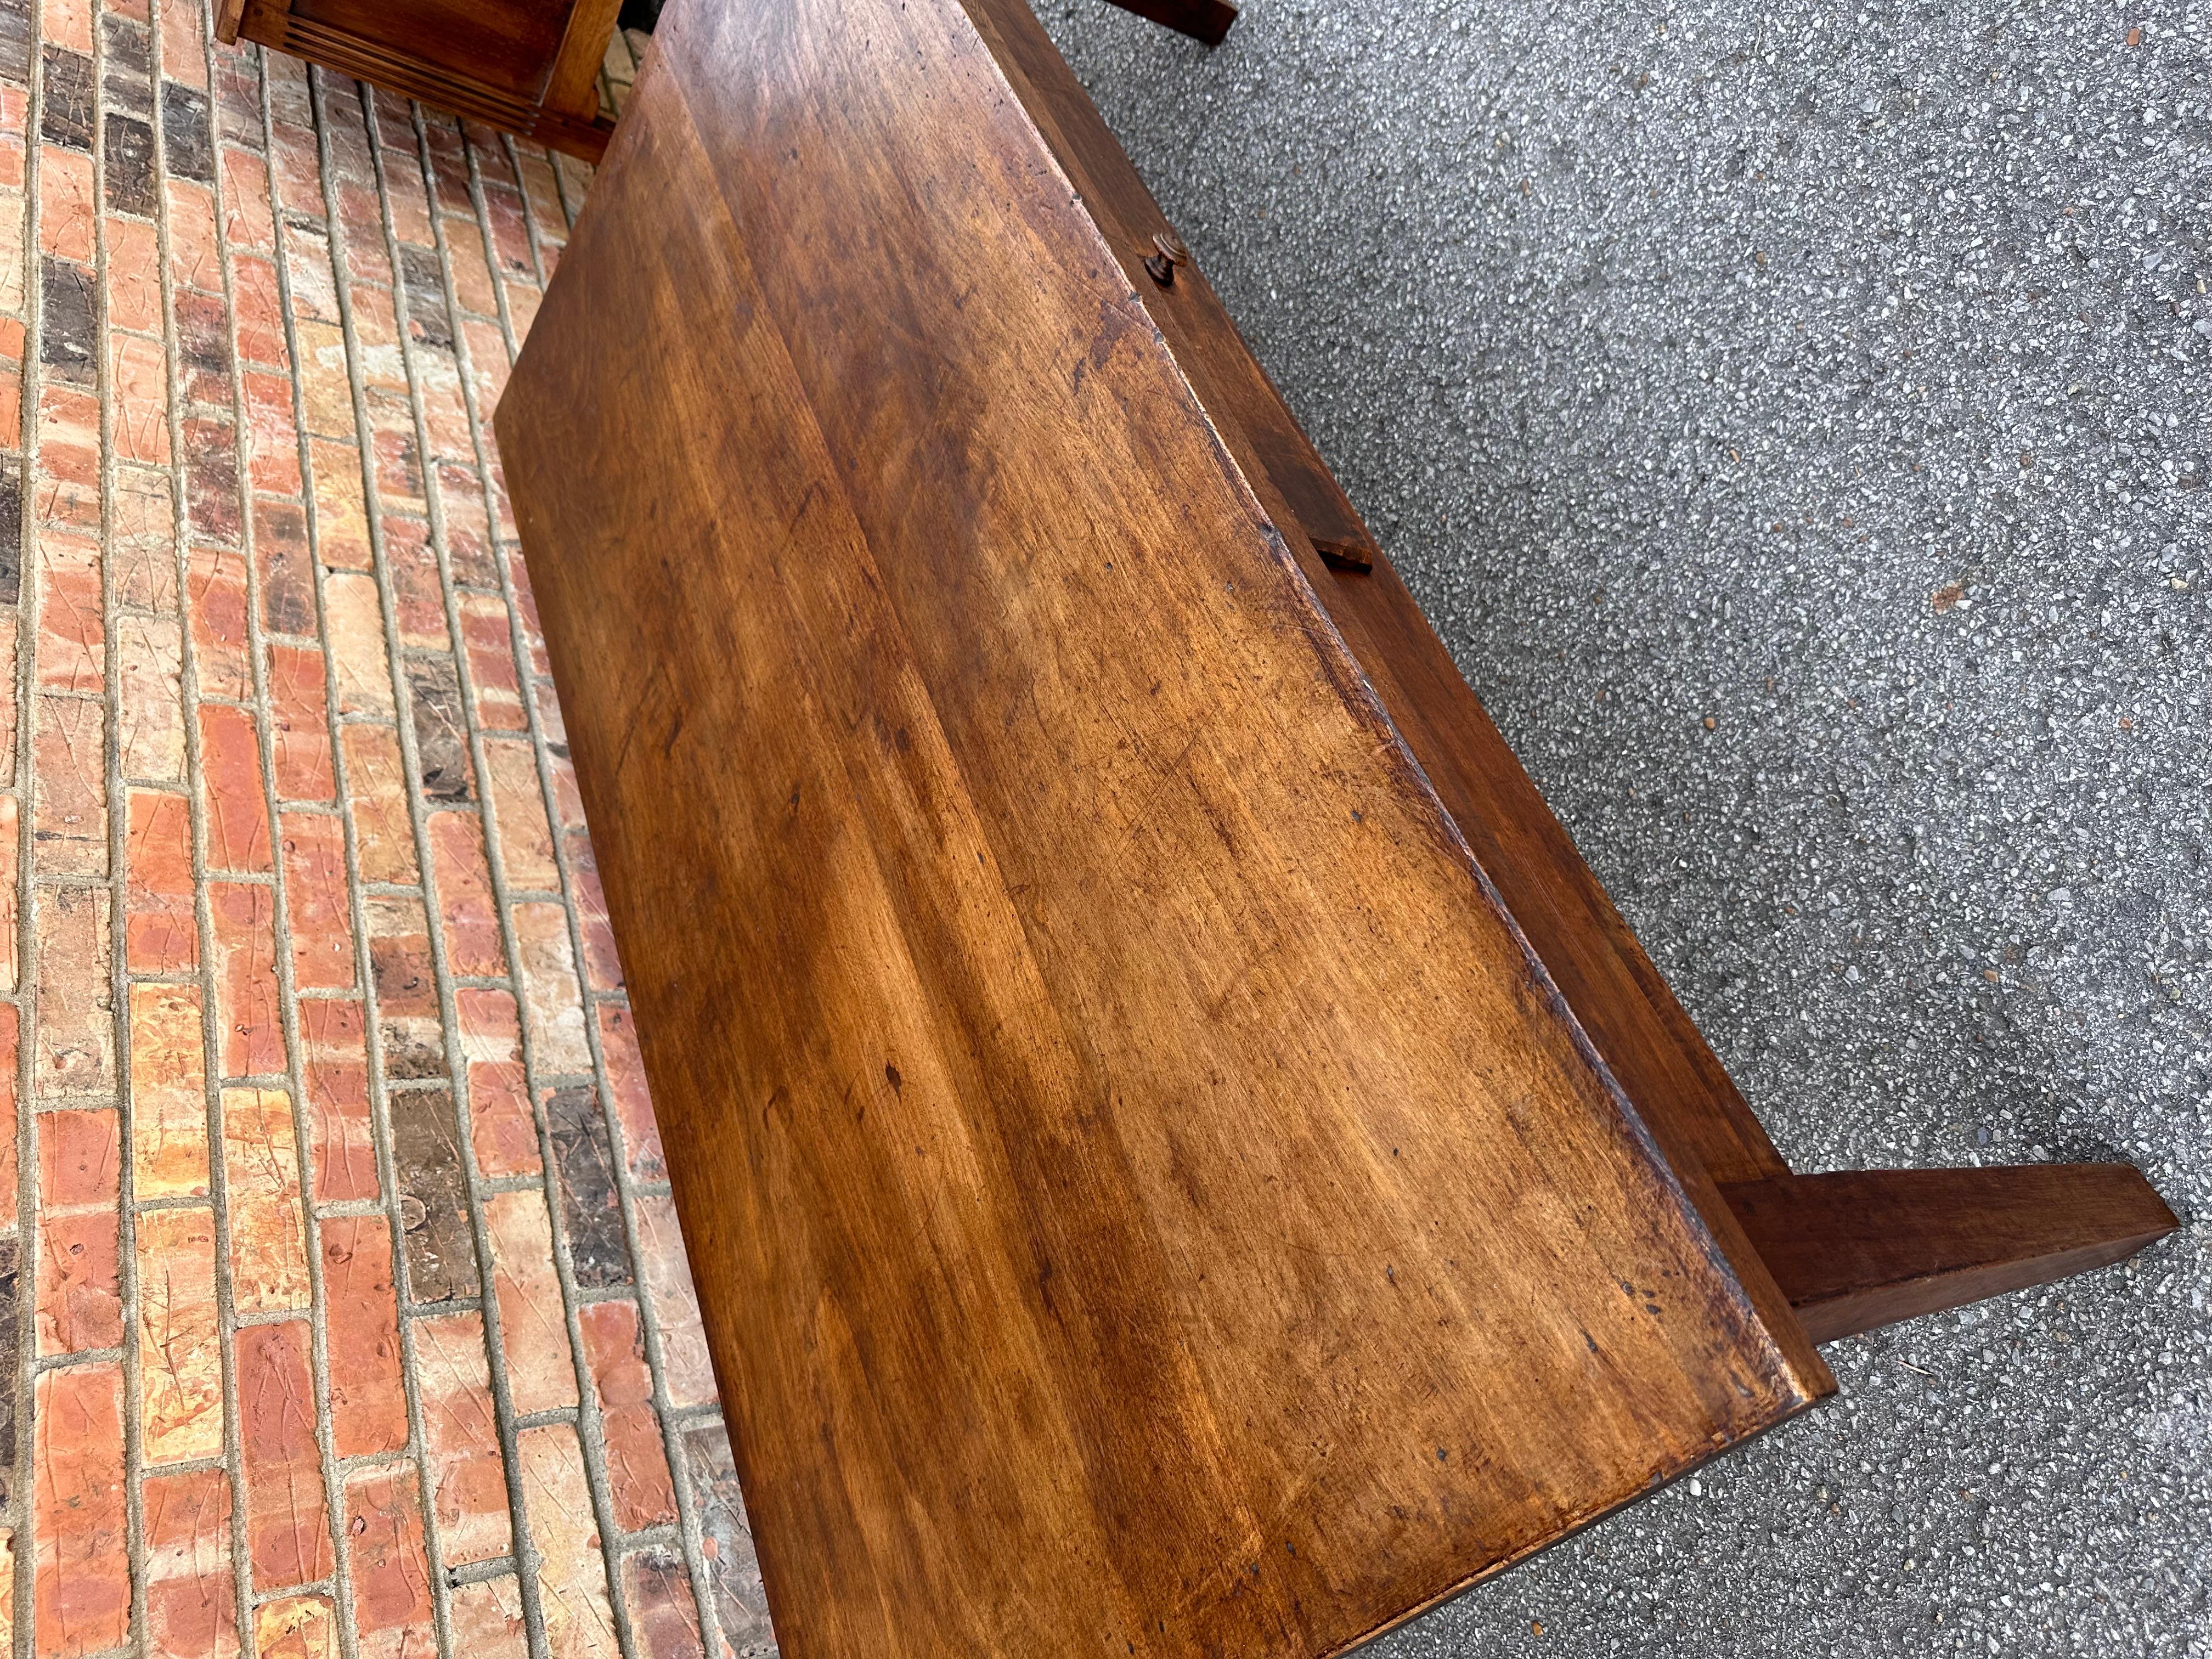 Il s'agit d'une magnifique table basse française du milieu du 19ème siècle. Le bois de noyer lui donne un ton chaud et une patine étonnante. Un seul tiroir pour ranger toutes les télécommandes que nous devons gérer de nos jours. Ces tables sont